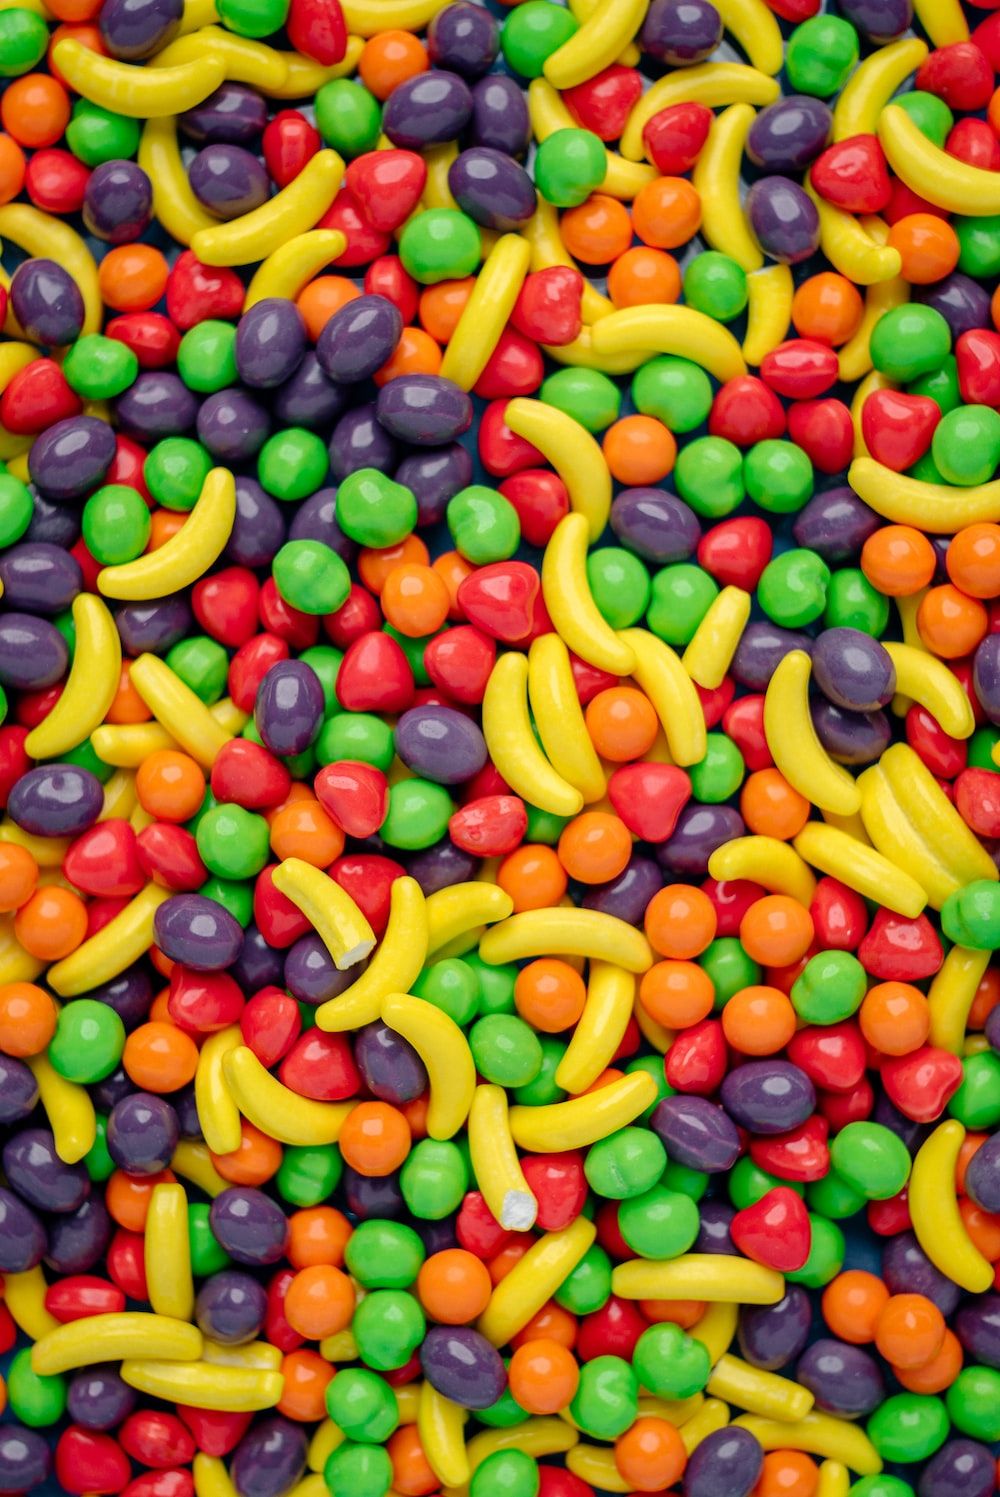  Süßigkeiten Hintergrundbild 1000x1497. Candy Background Picture. Download Free Image